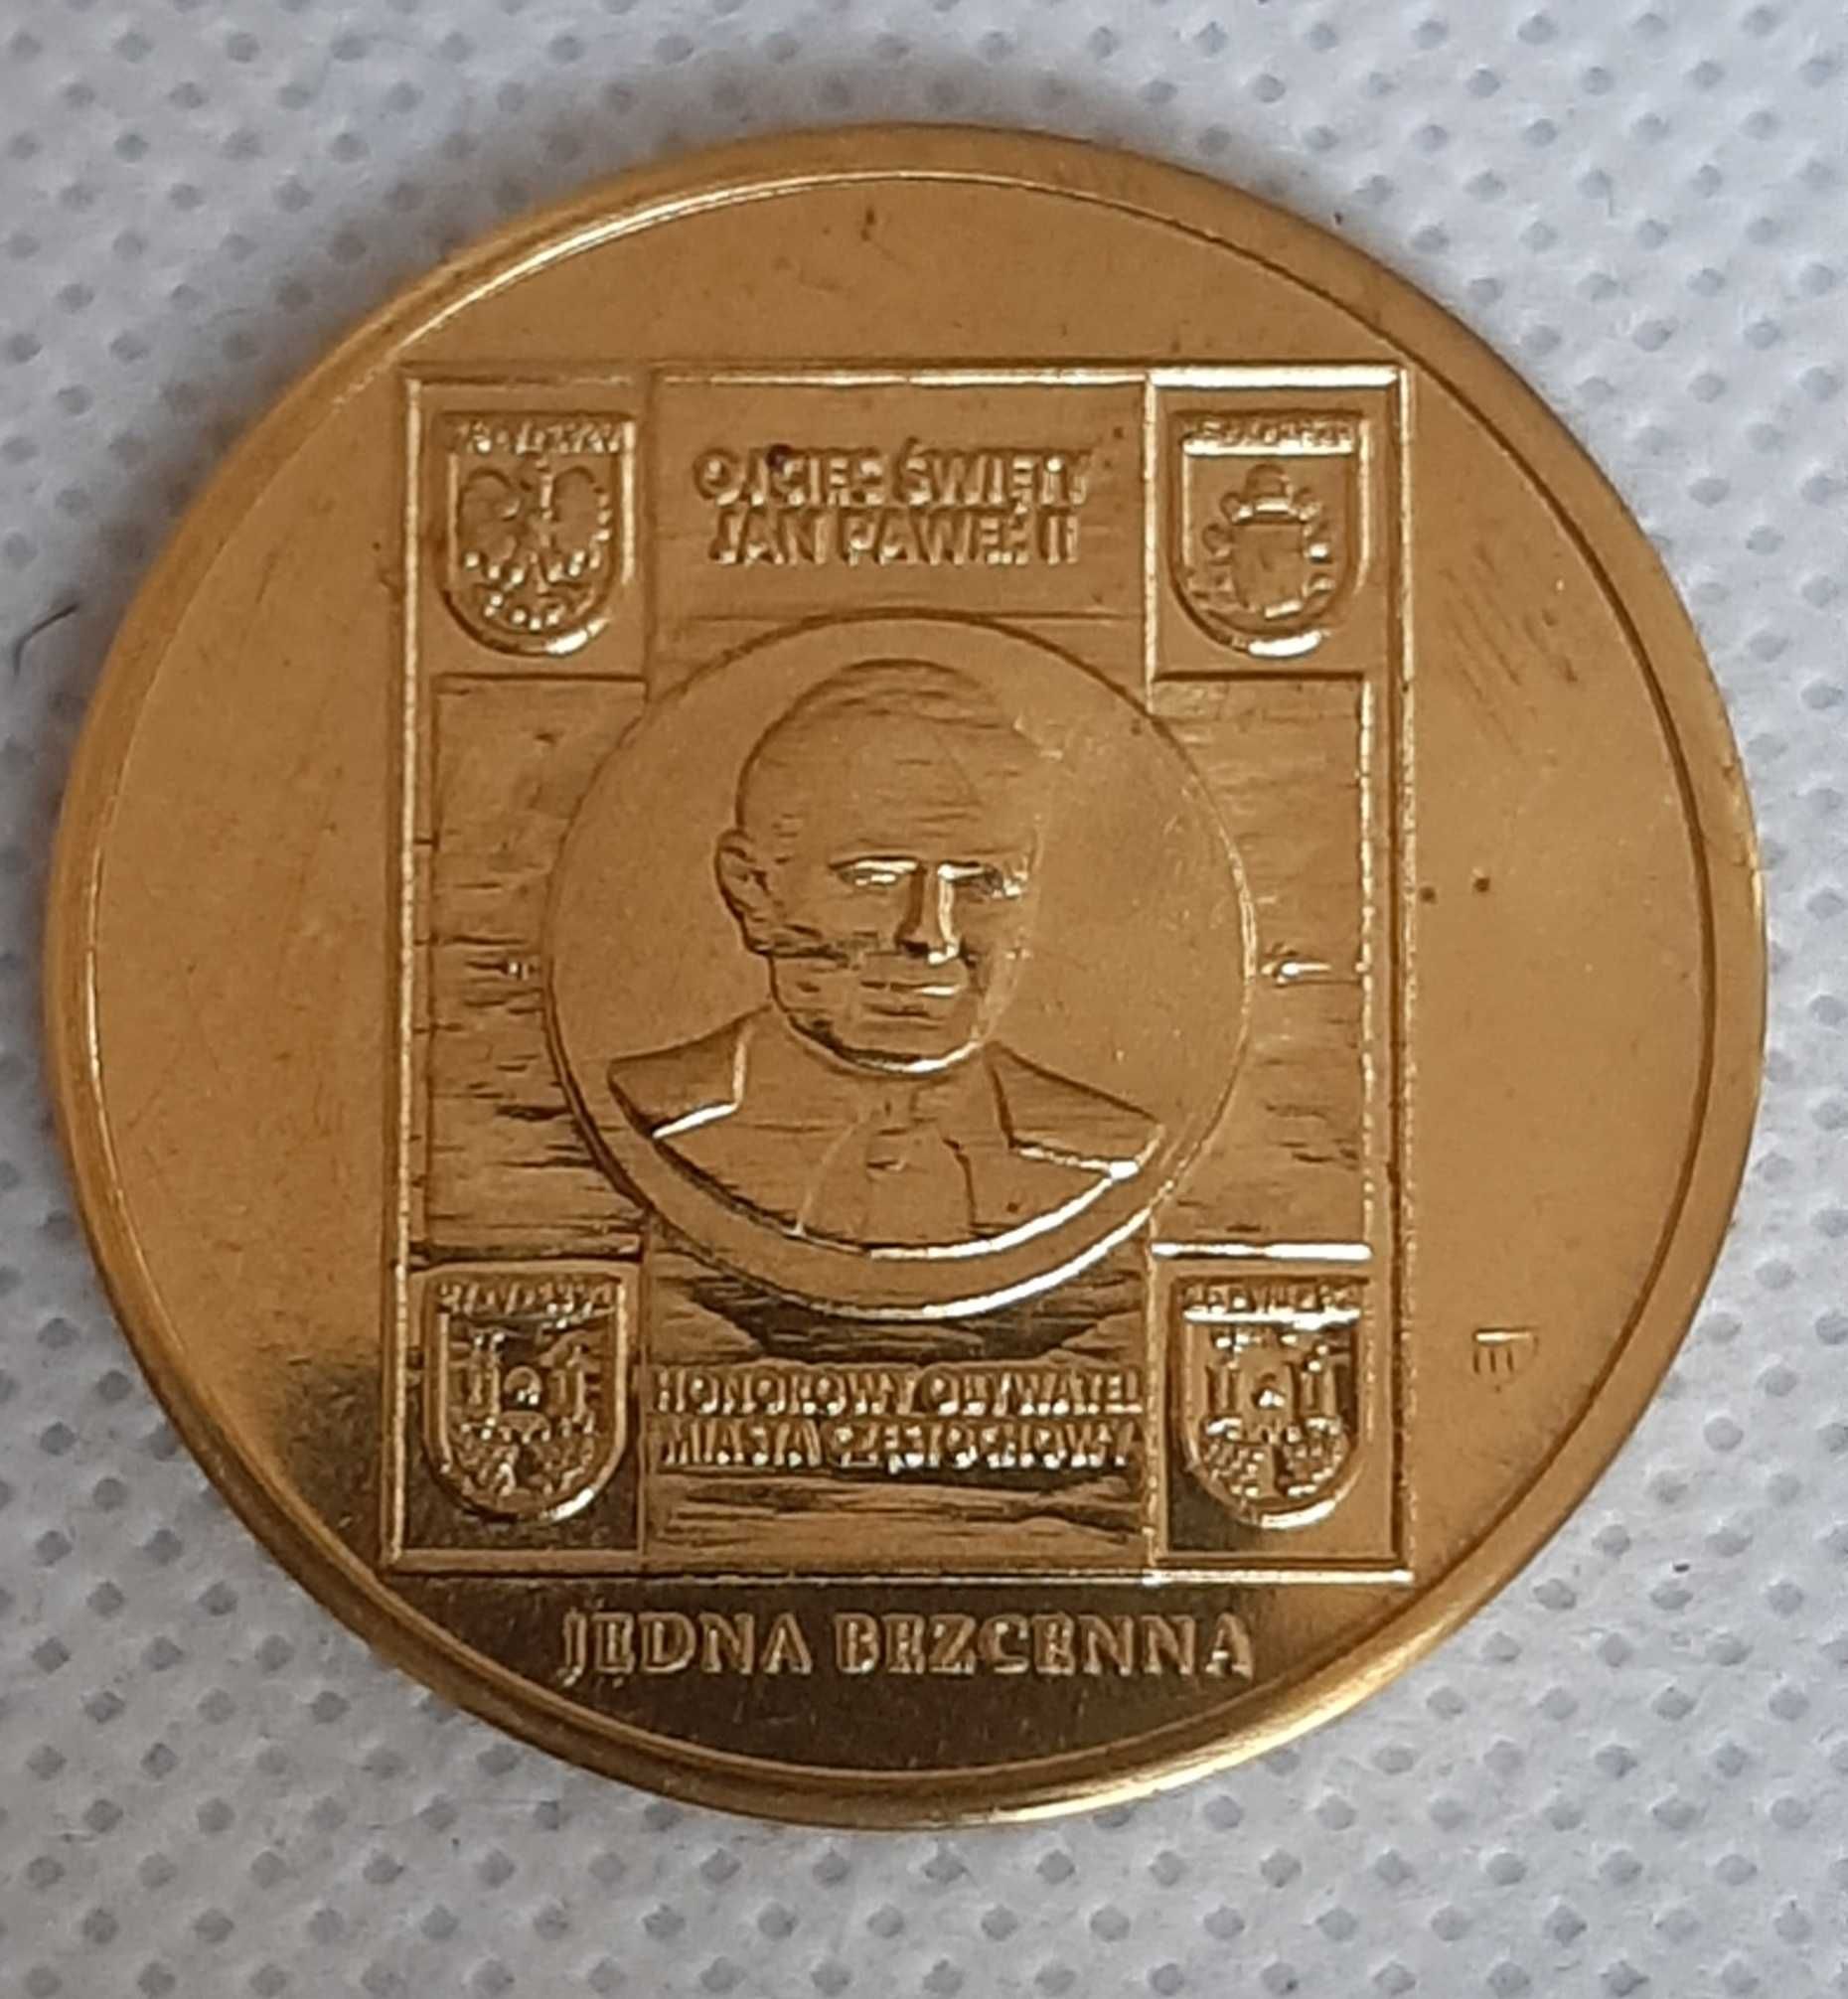 Moneta zastępcza Kanonizacja JPII Jedna Bezcenna Częstochowa 2014r.